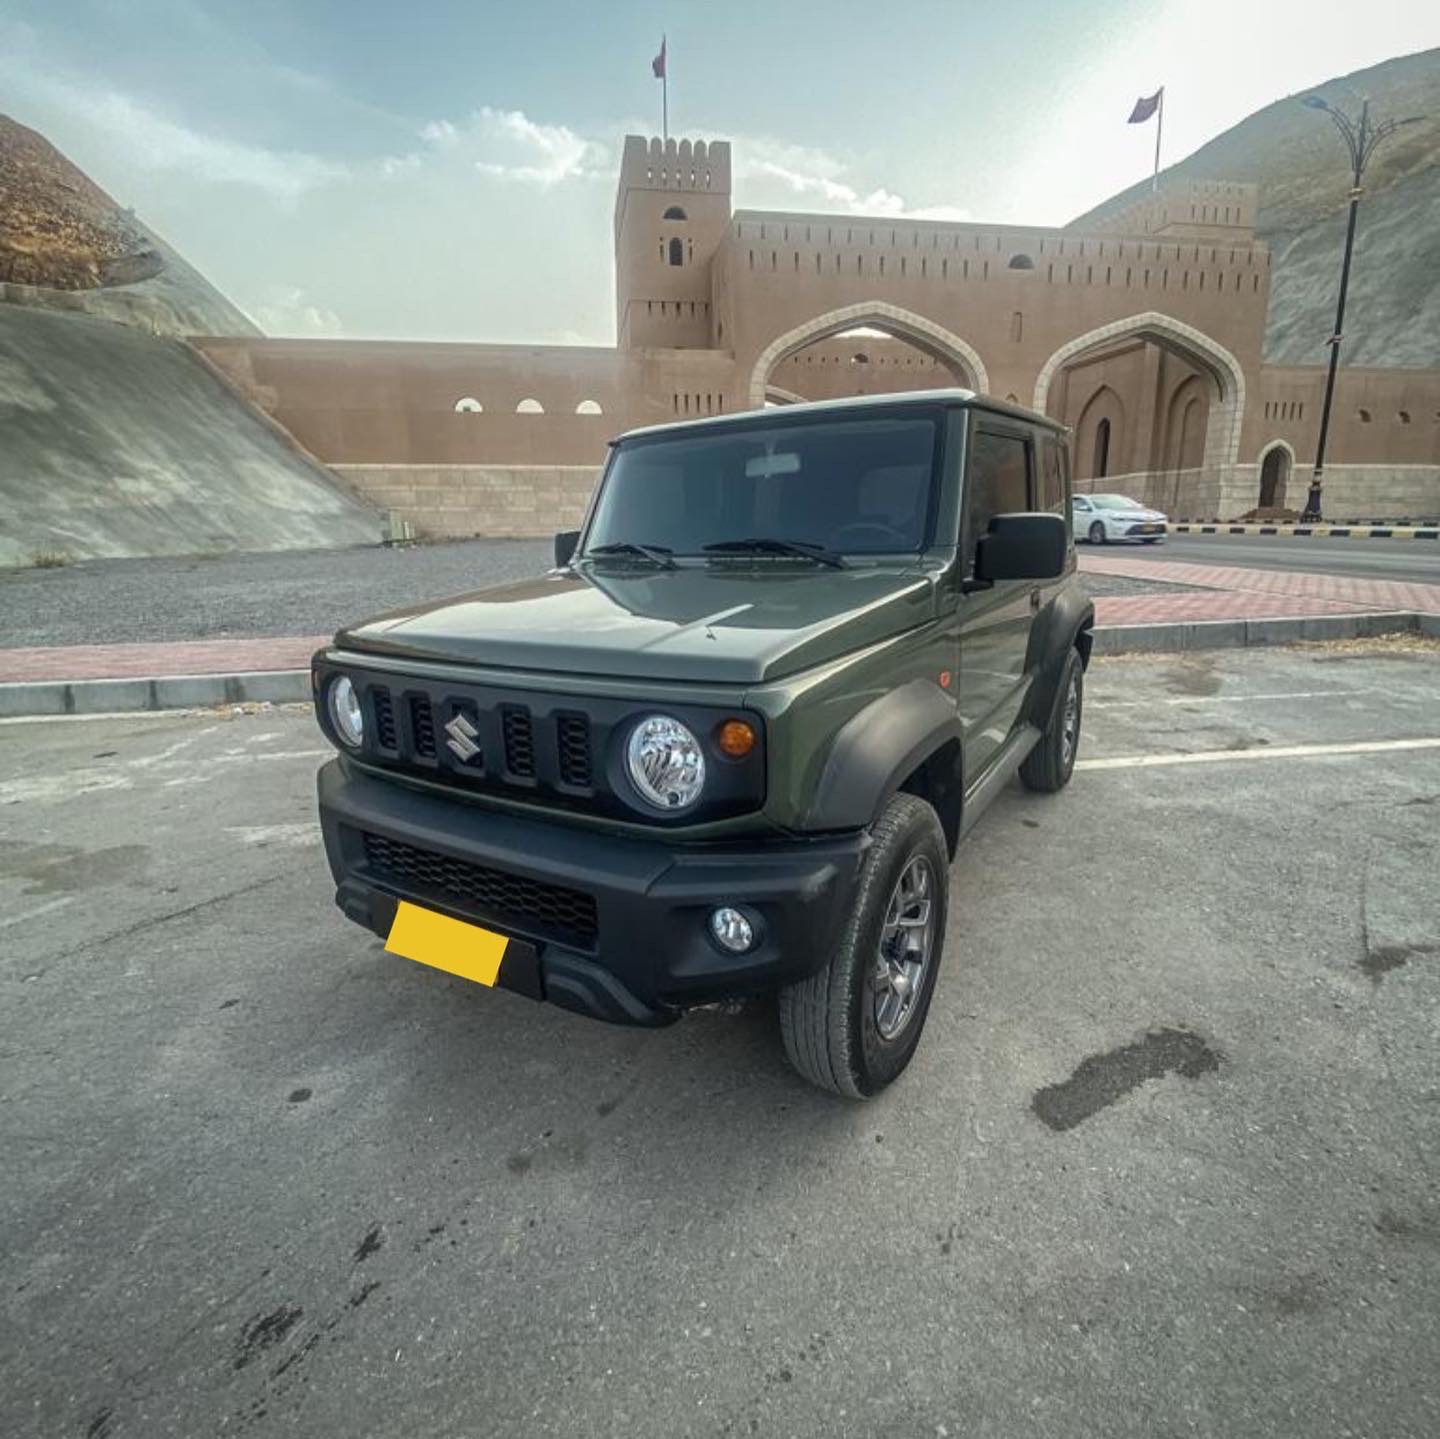 سيارة سوزوكي جيمني موديل 2021 للبيع فى مسقط سلطنة عمان